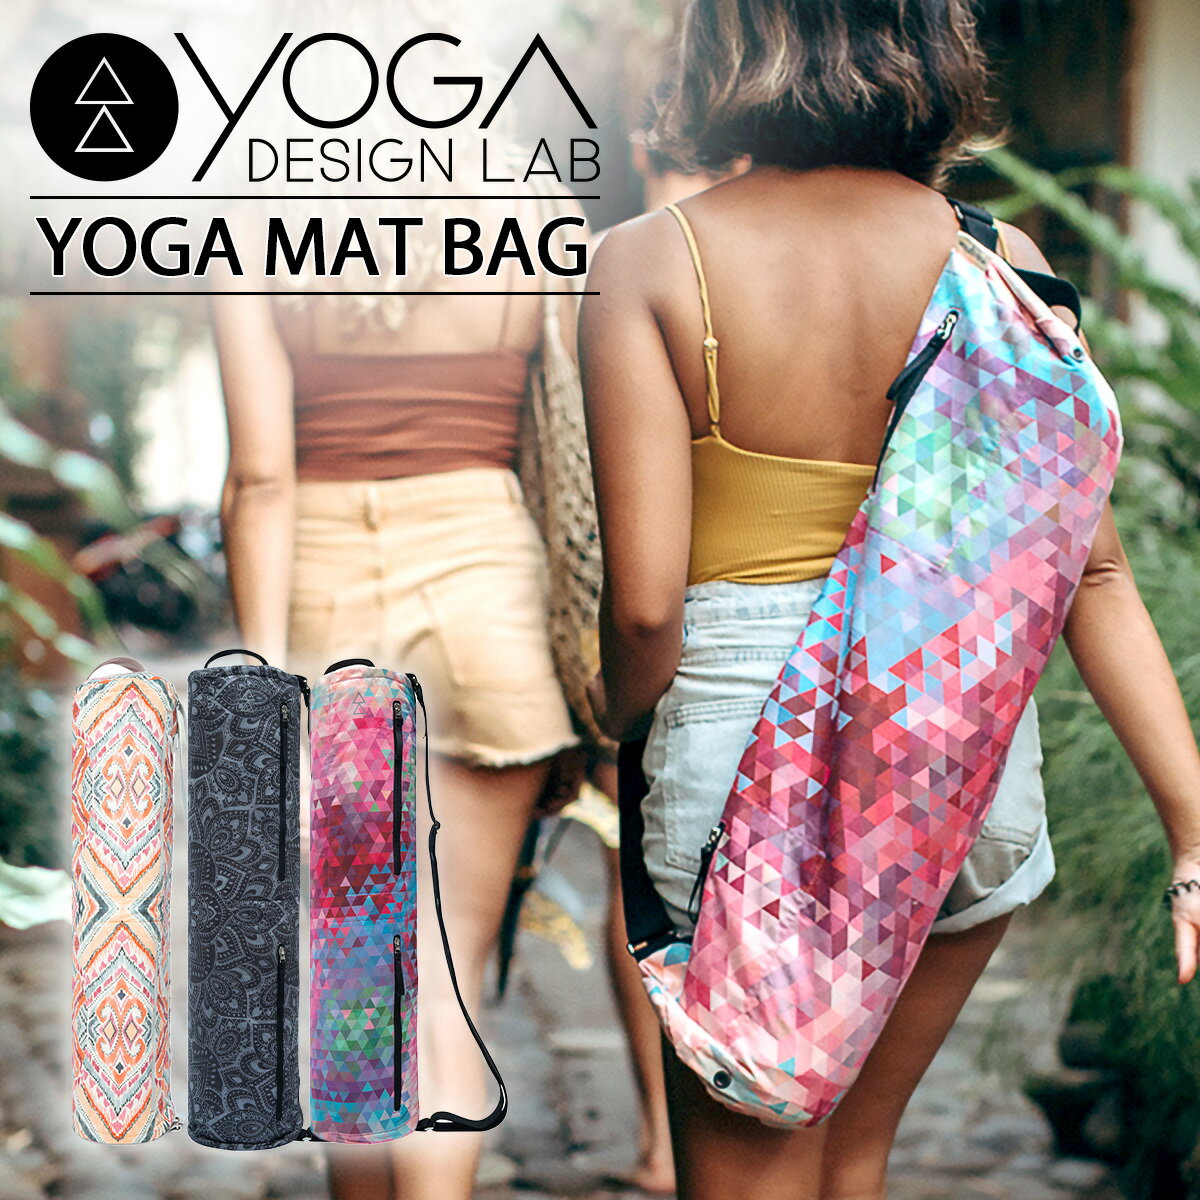 ヨガデザインラボ ヨガマットバッグ YOGADESIGNLAB YOGA MAT BAG ヨガバッグ マットバッグ ヨガマットケース 収納 ケース 持ち運び 大容量 かわいい おしゃれ ポケット付き マイクロファイバー エコ素材 送料無料